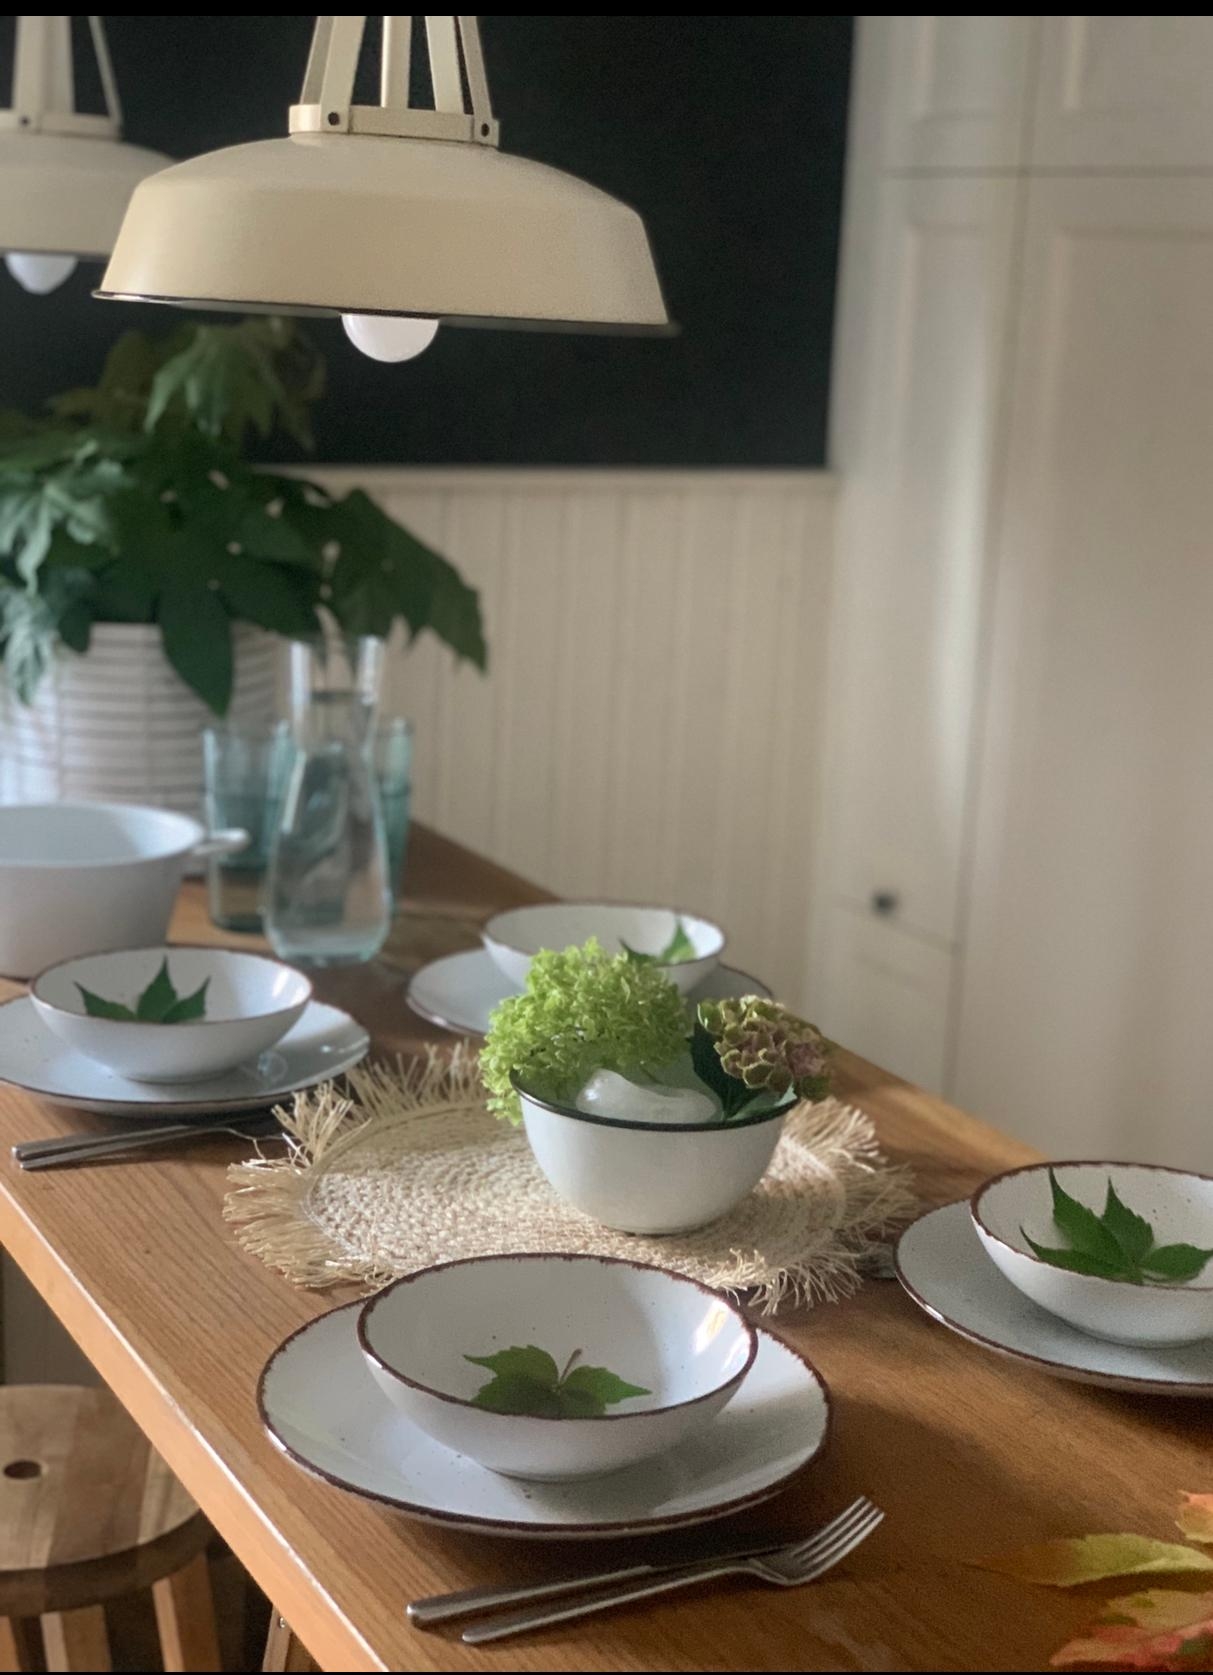 Ich liebe gemeinsame Essen an einem schön gedeckten Tisch. #hygge #livingchallenge #herbstdeko #minimalistisch